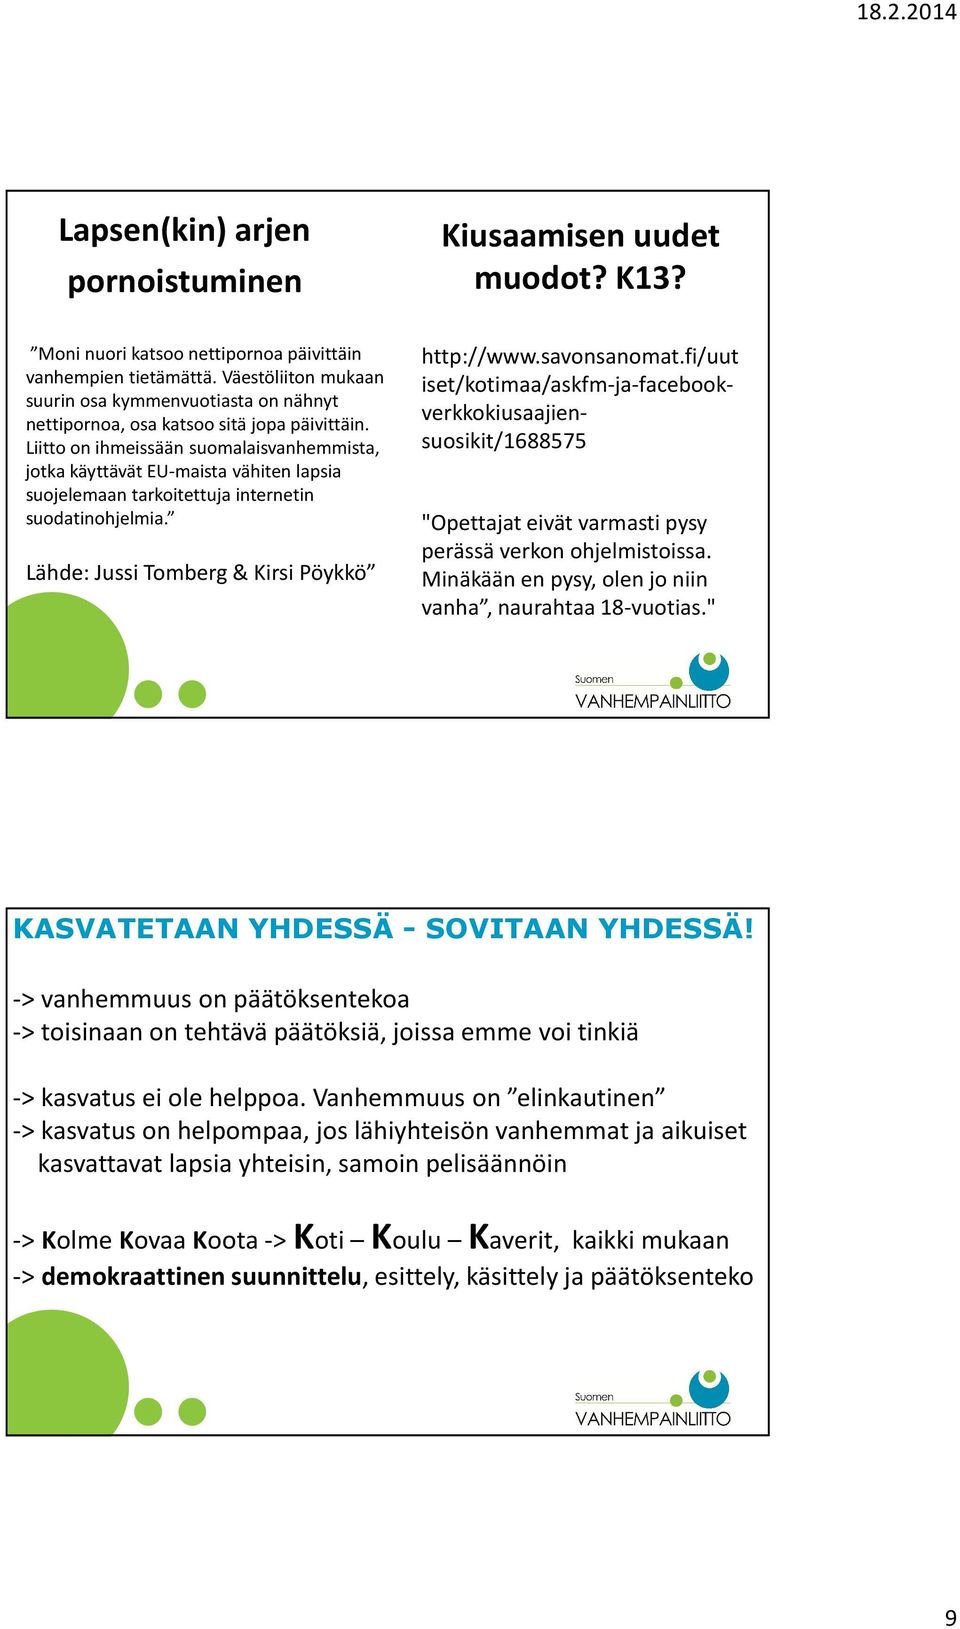 Liitto on ihmeissään suomalaisvanhemmista, jotka käyttävät EU-maista vähiten lapsia suojelemaan tarkoitettuja internetin suodatinohjelmia. Lähde: Jussi Tomberg & Kirsi Pöykkö http://www.savonsanomat.